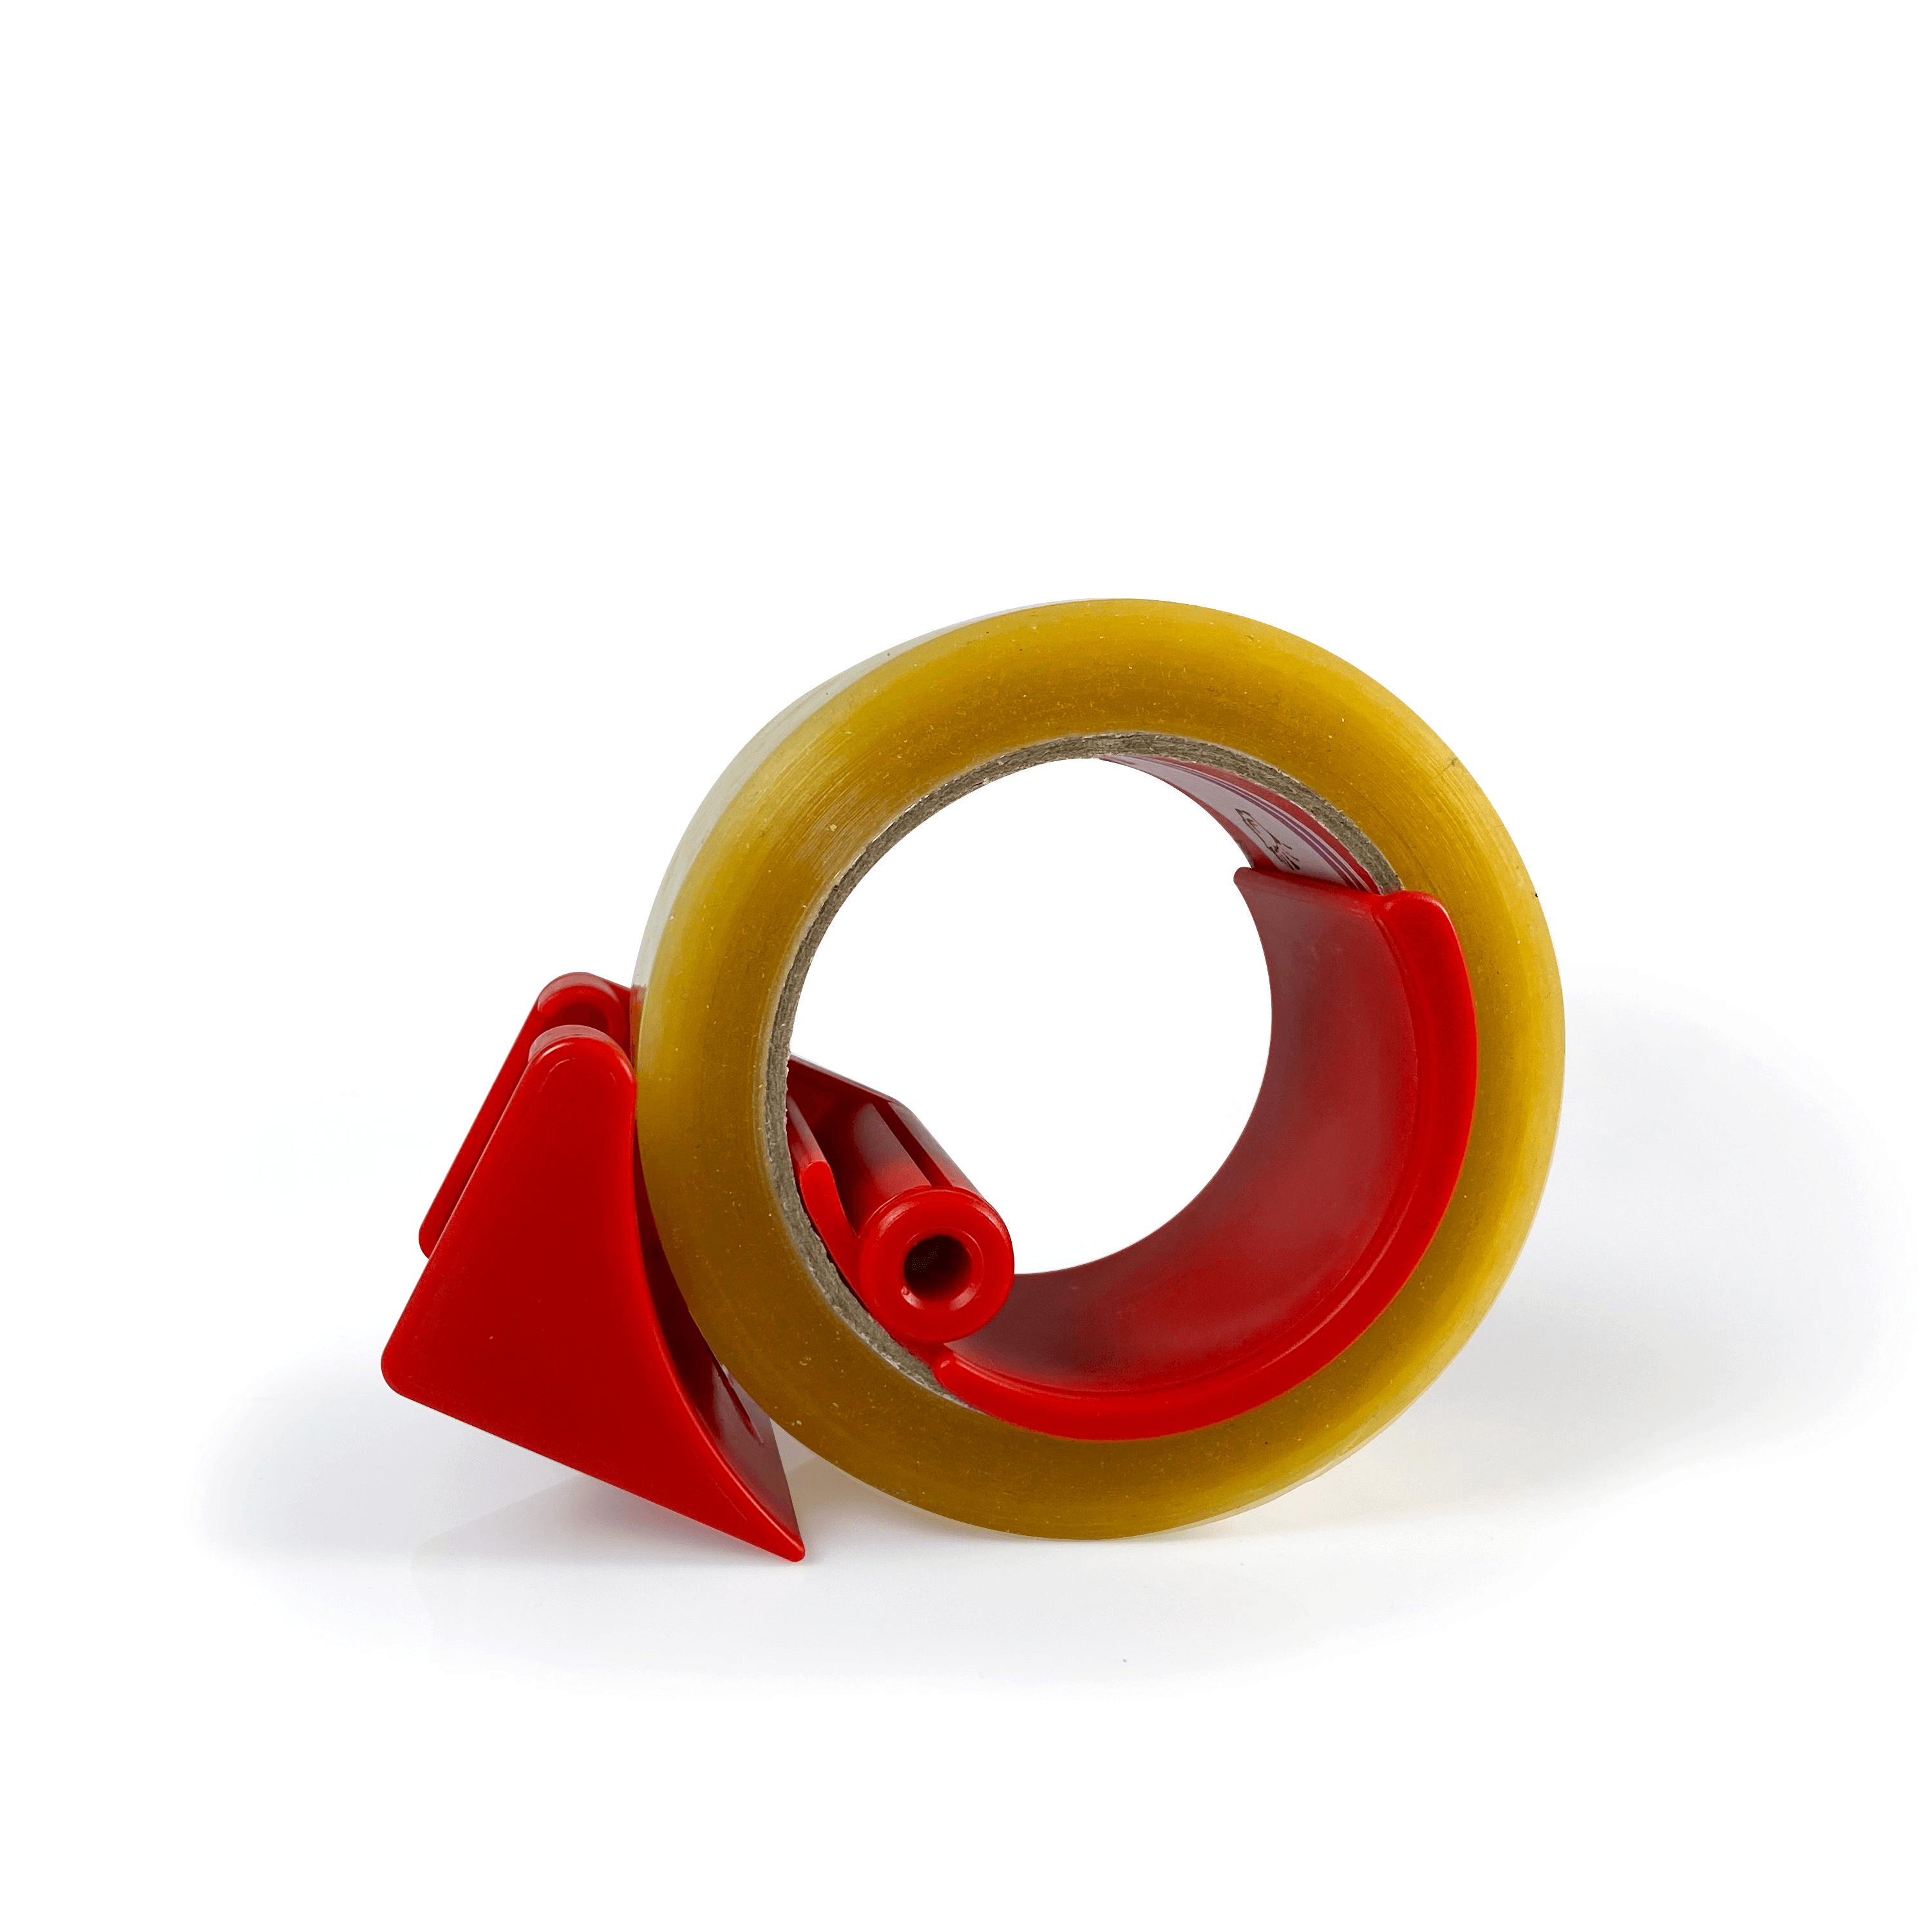 Bant Kesme Aparatı 50 mm Plastik Kırmızı D6 (Bantkes)